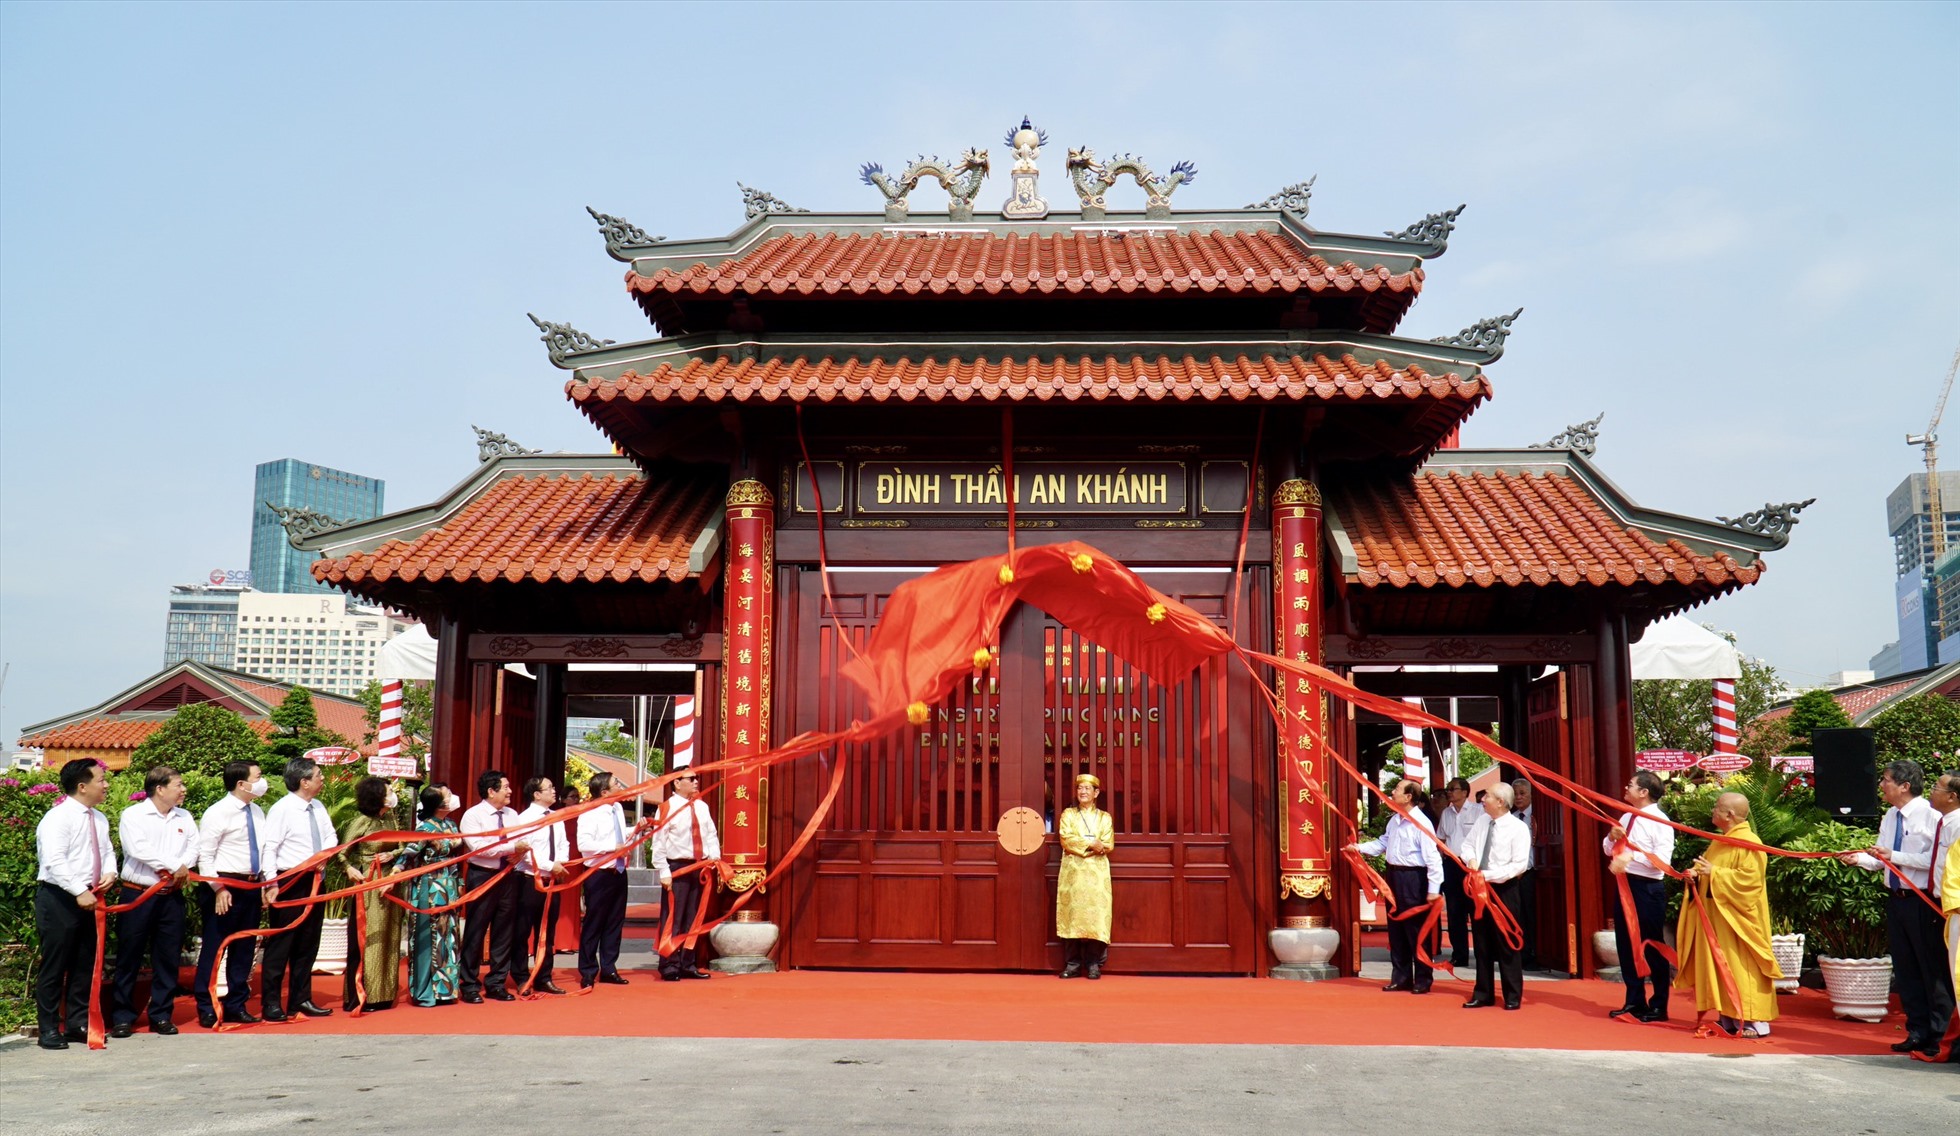 Trong dịp lễ 30.4-1.5 vừa qua, đình An Khánh mới đã chính thức được khánh thành và mở cửa trở lại, thu hút sự quan tâm của người dân cũng như những người yêu văn hóa truyền thống của dân tộc.